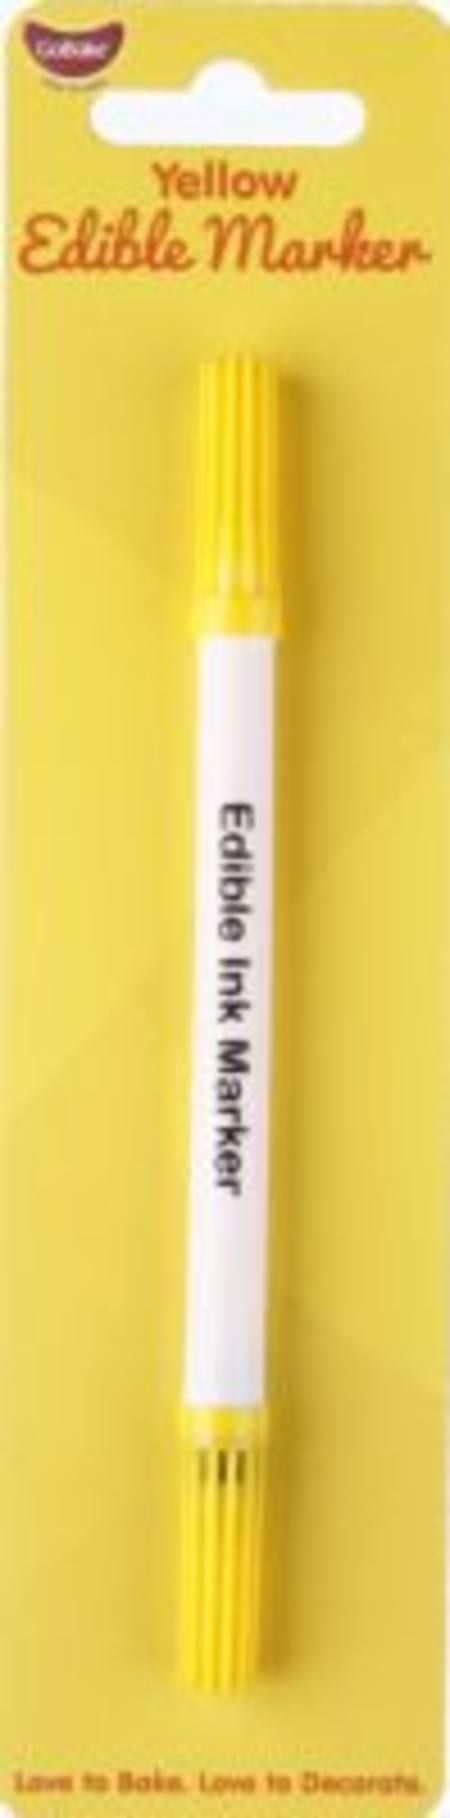 Edible Marker Pen Yellow